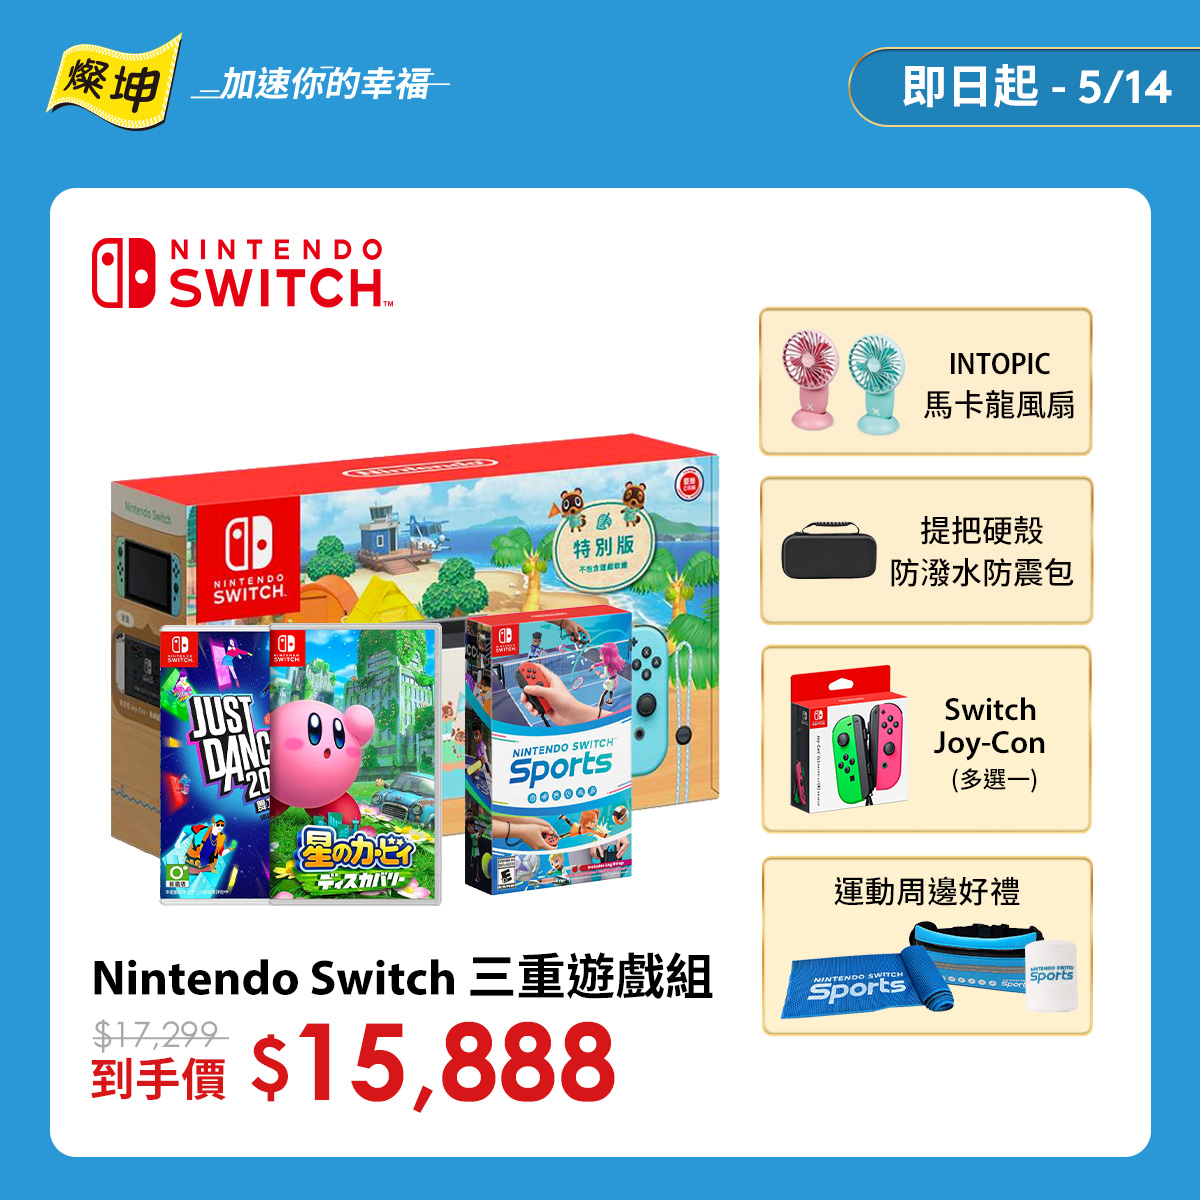 Nintendo Switch 三重遊戲組